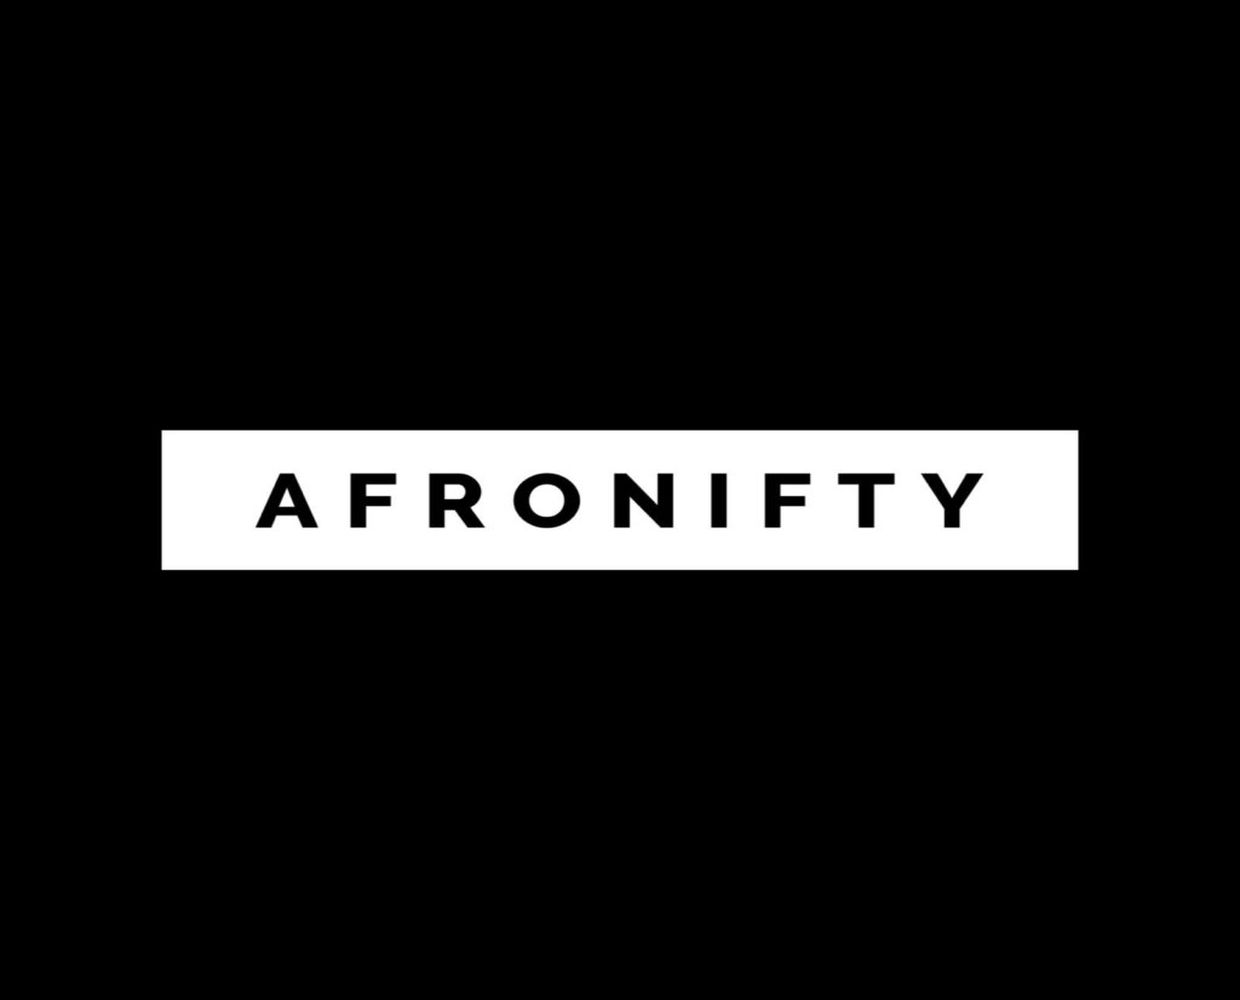 Bagaimanakah Afronifty Memanfaatkan Kenaikan Afrobeats Untuk Menjadi Pasaran NFT Terbesar Di Afrika?